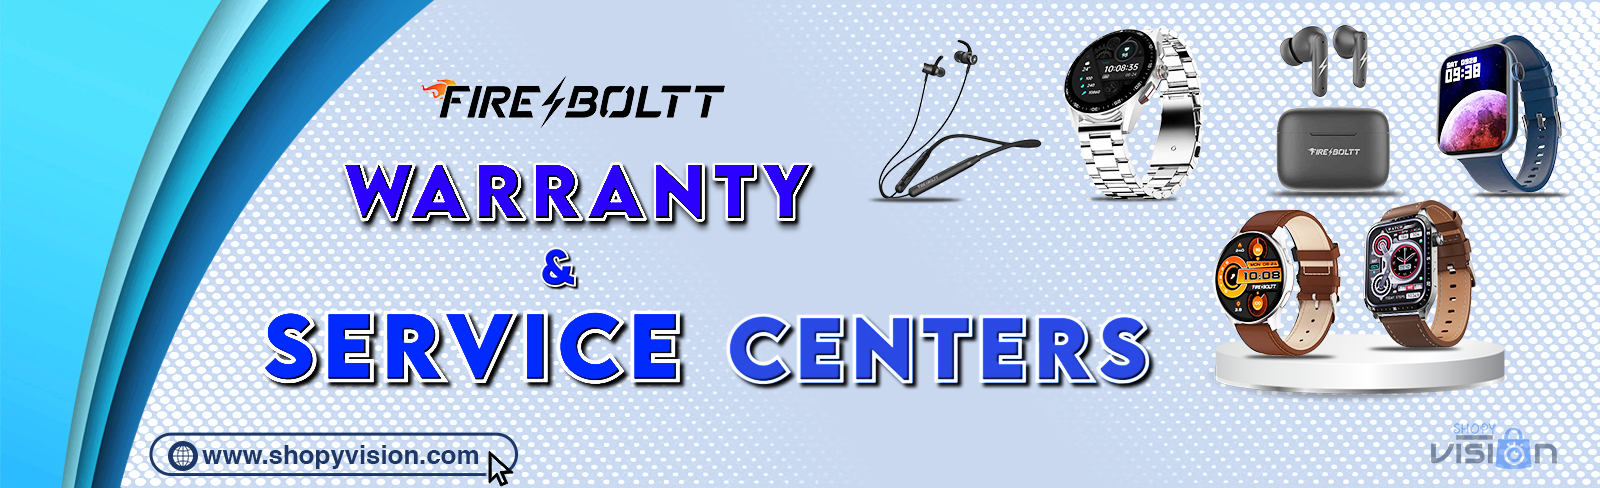 Firebolt Warranty And Service Centers Desktop Banner